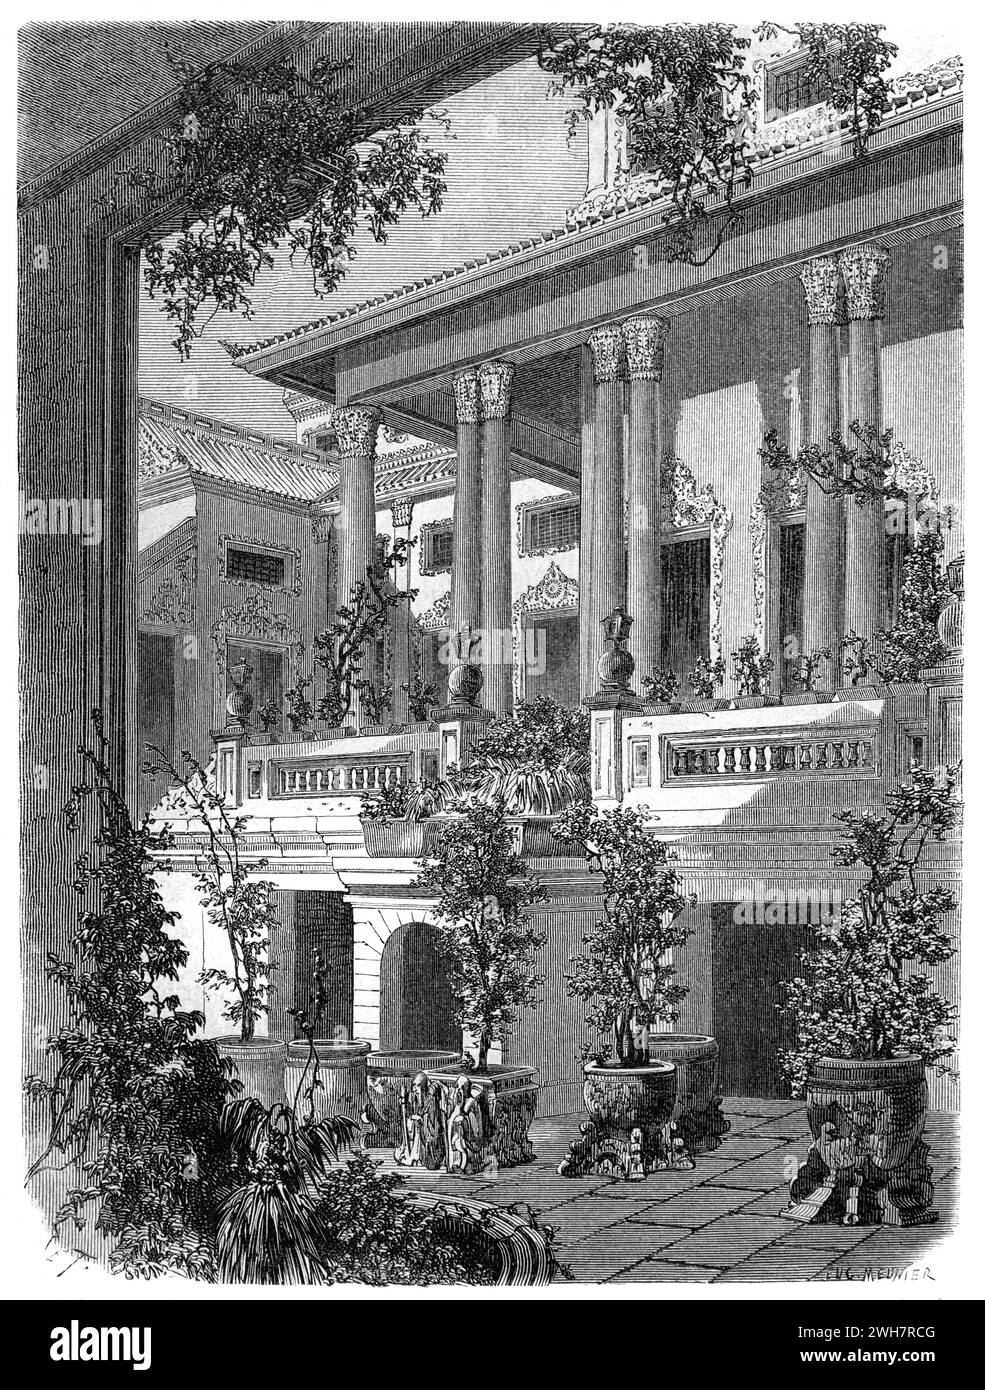 Bâtiments royaux dans le parc du Grand Palais ou Palais Royal et jardins Bangkok Thaïlande. Gravure vintage ou historique ou illustration 1863 Banque D'Images